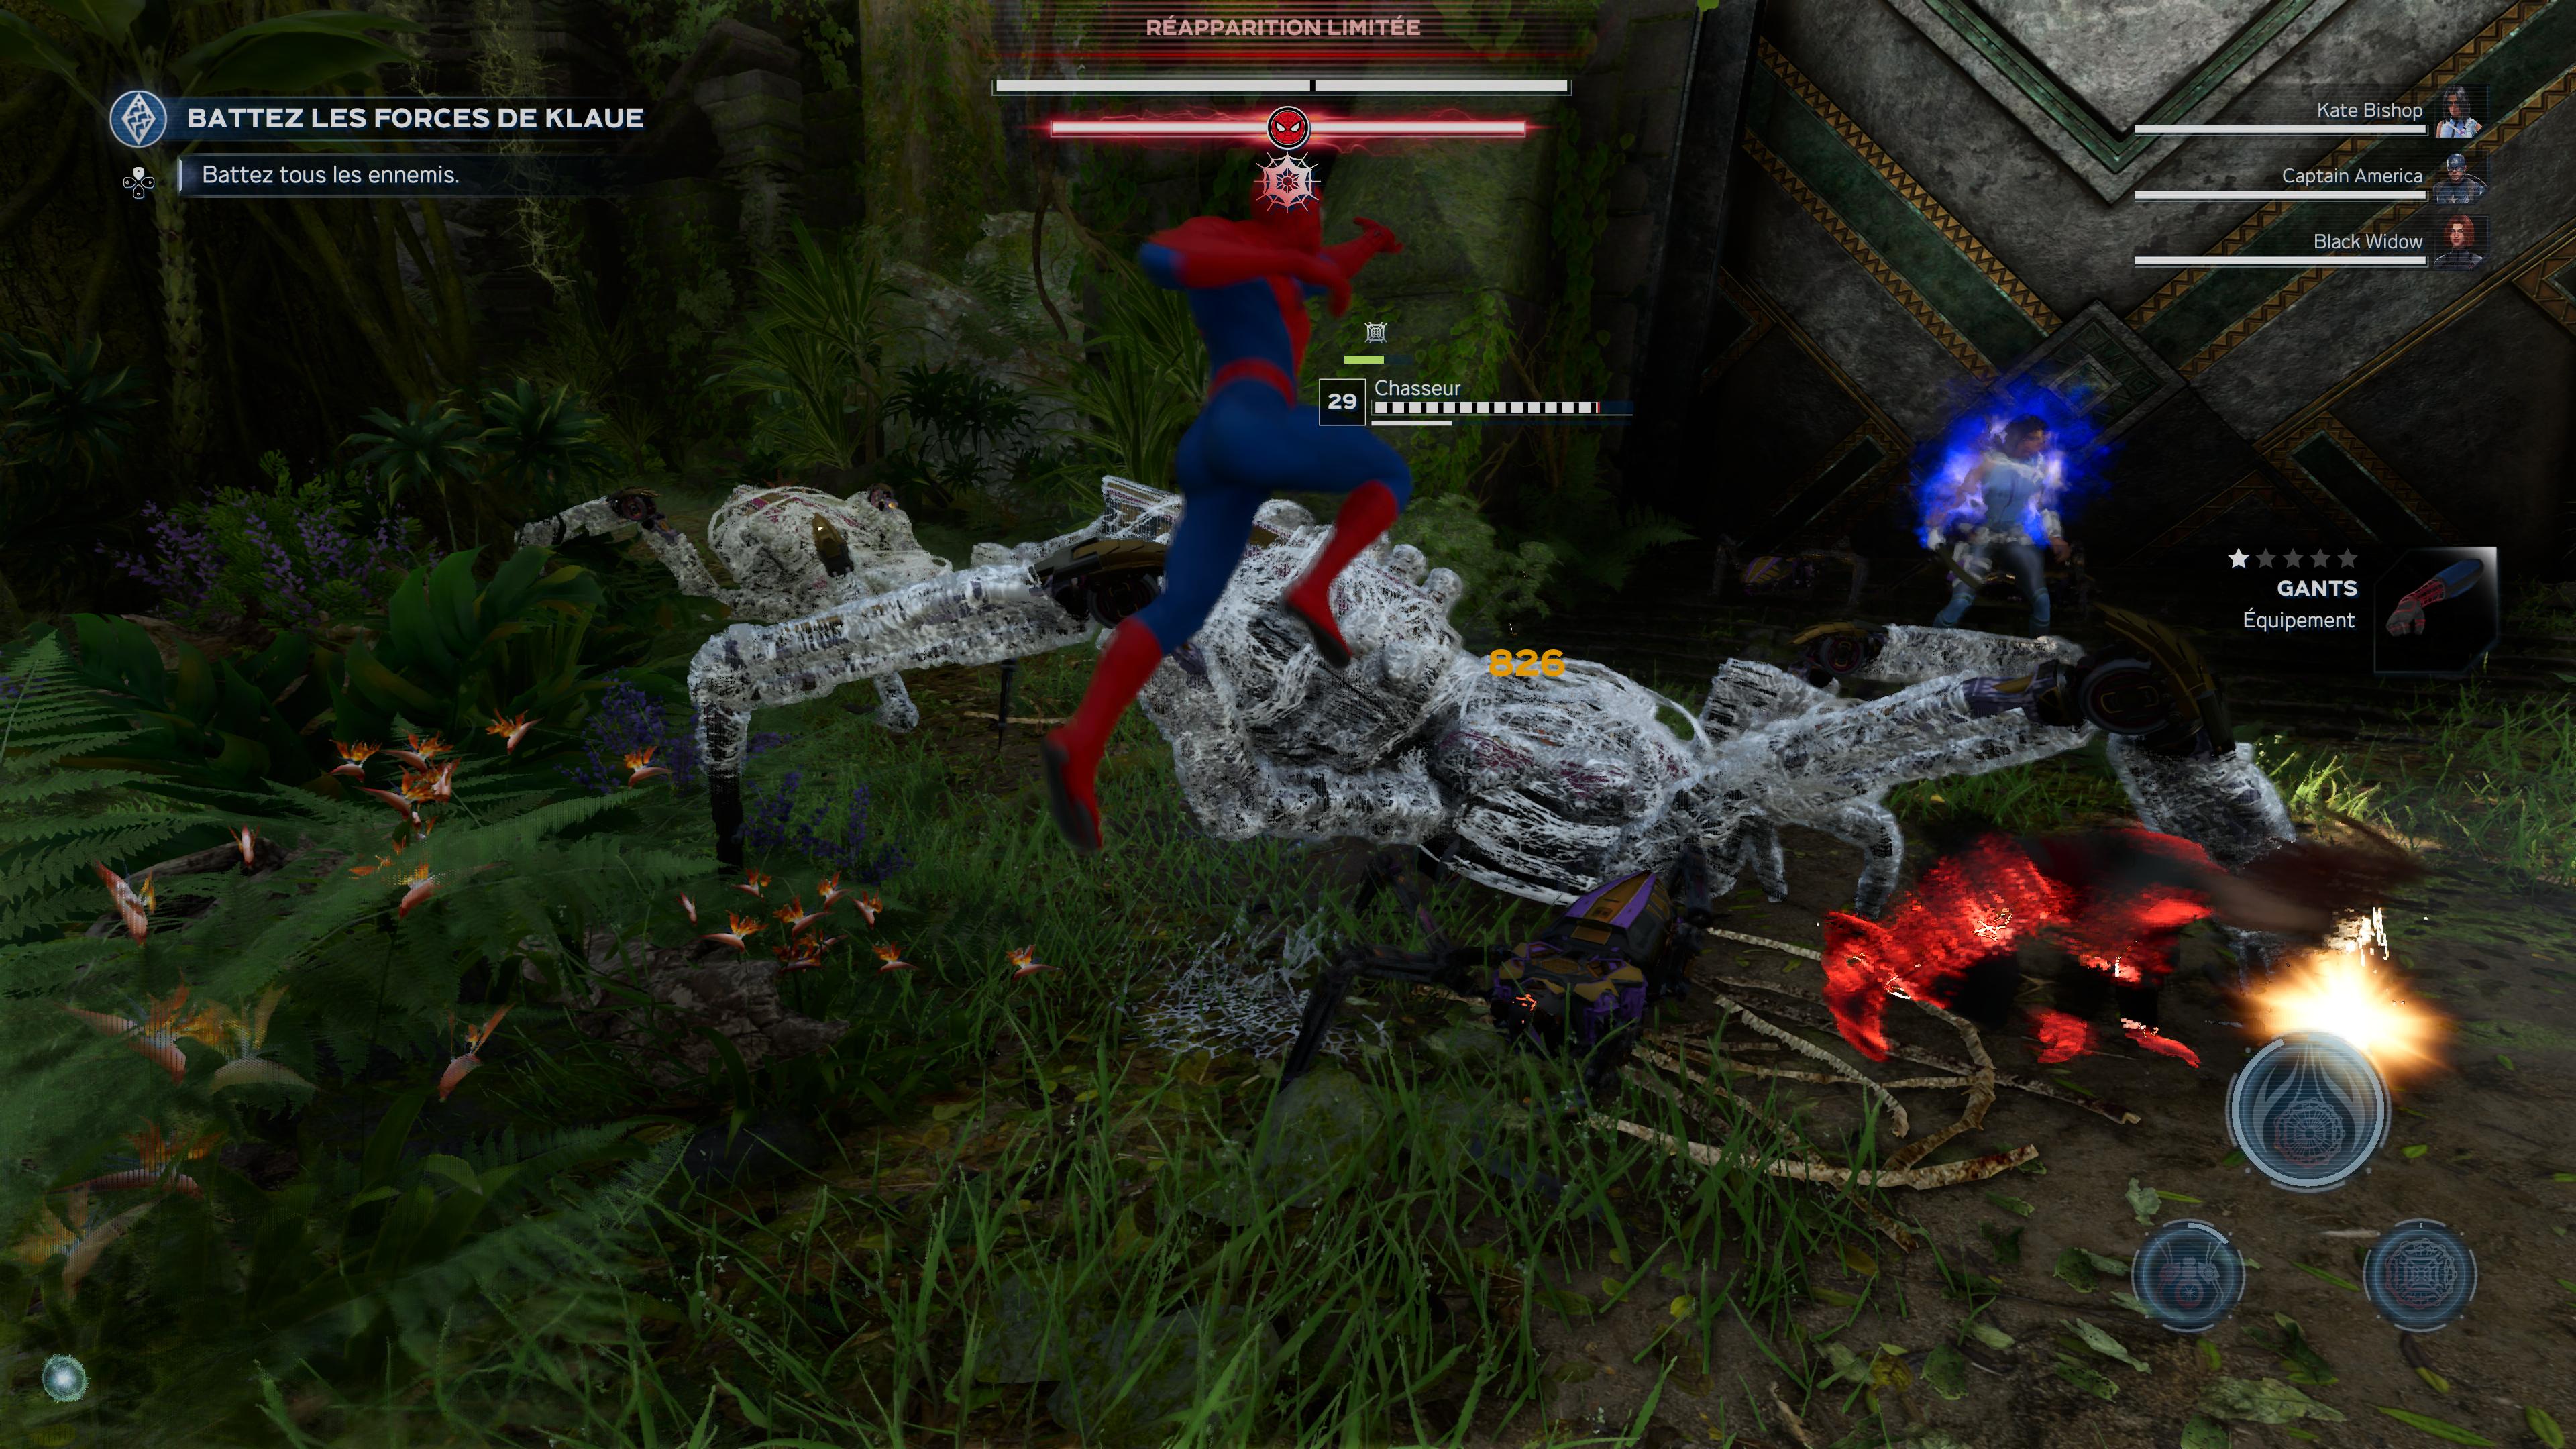 Marvel avengers spider man 12 14